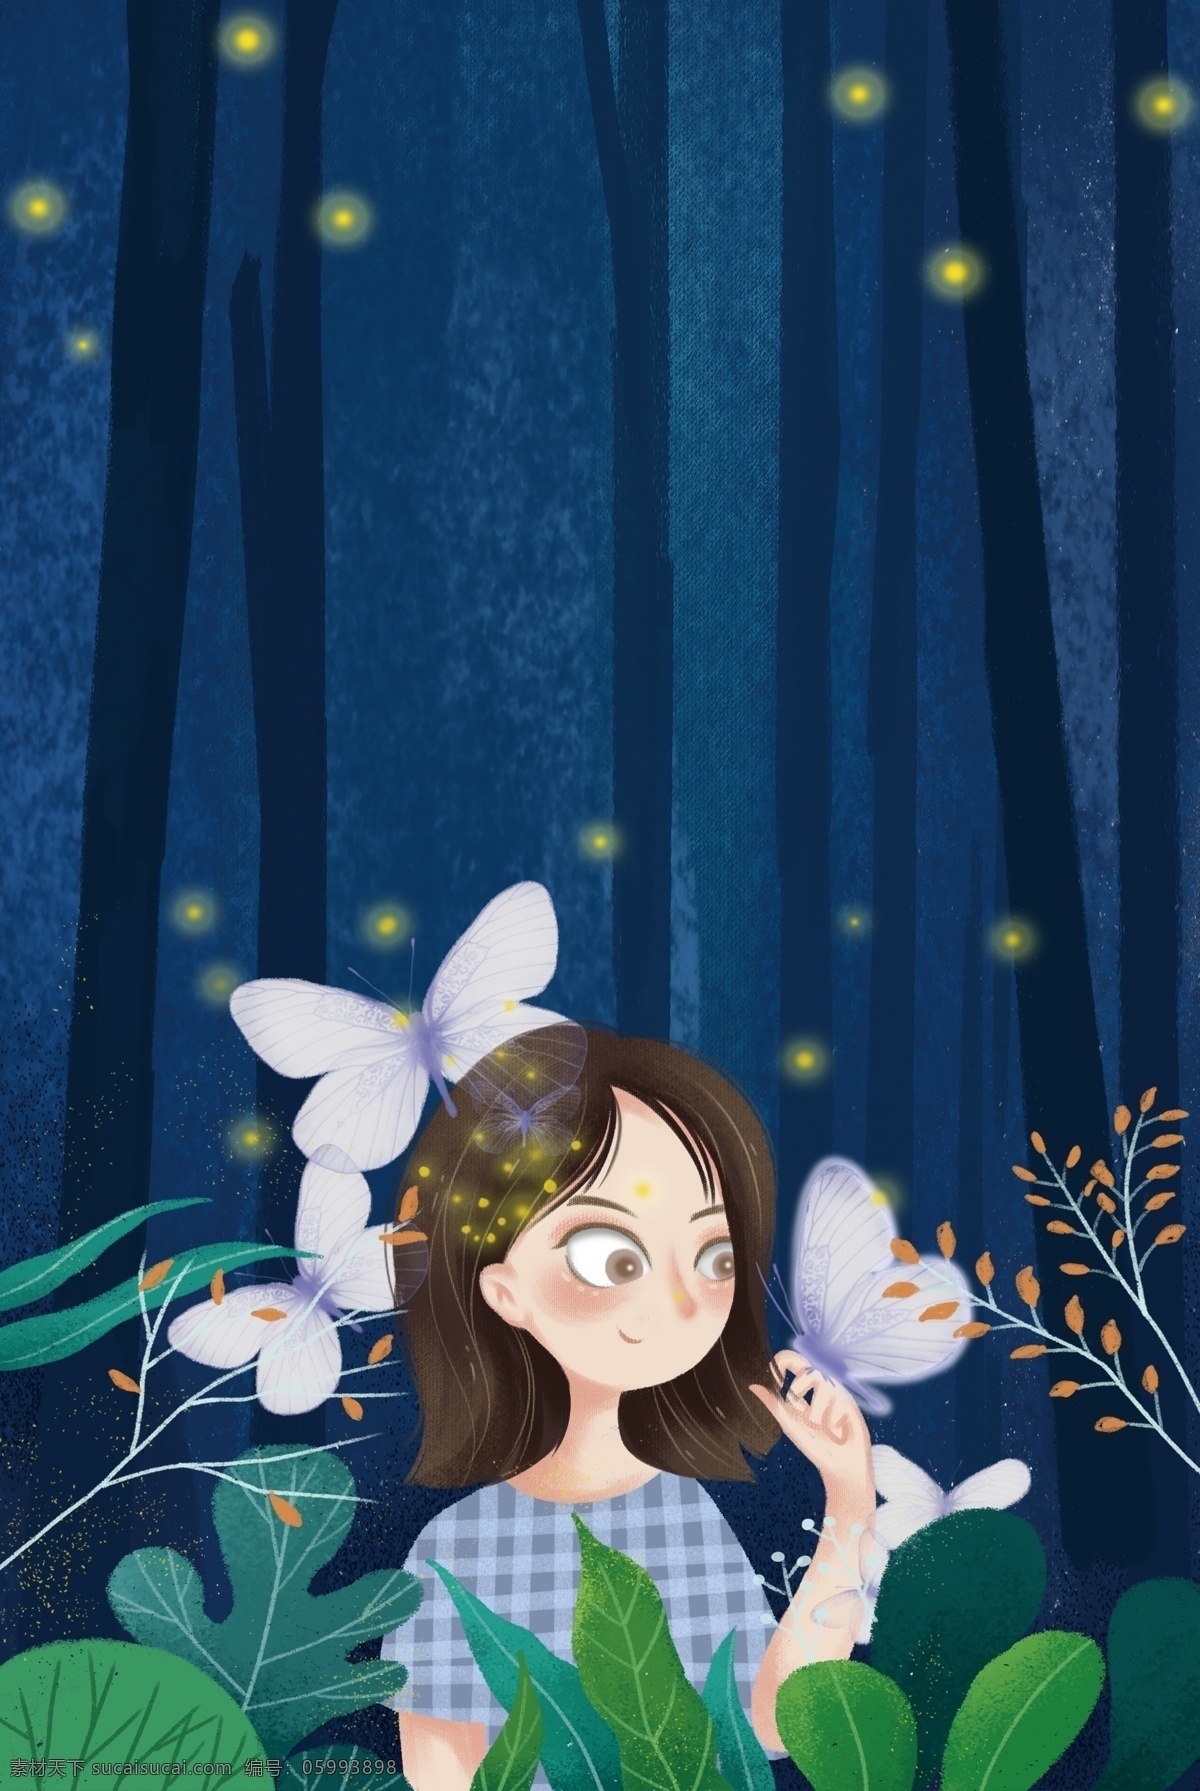 夜晚 森林 女孩 海报 背景 渐变 蓝色 树木 蝴蝶 精灵 促销海报